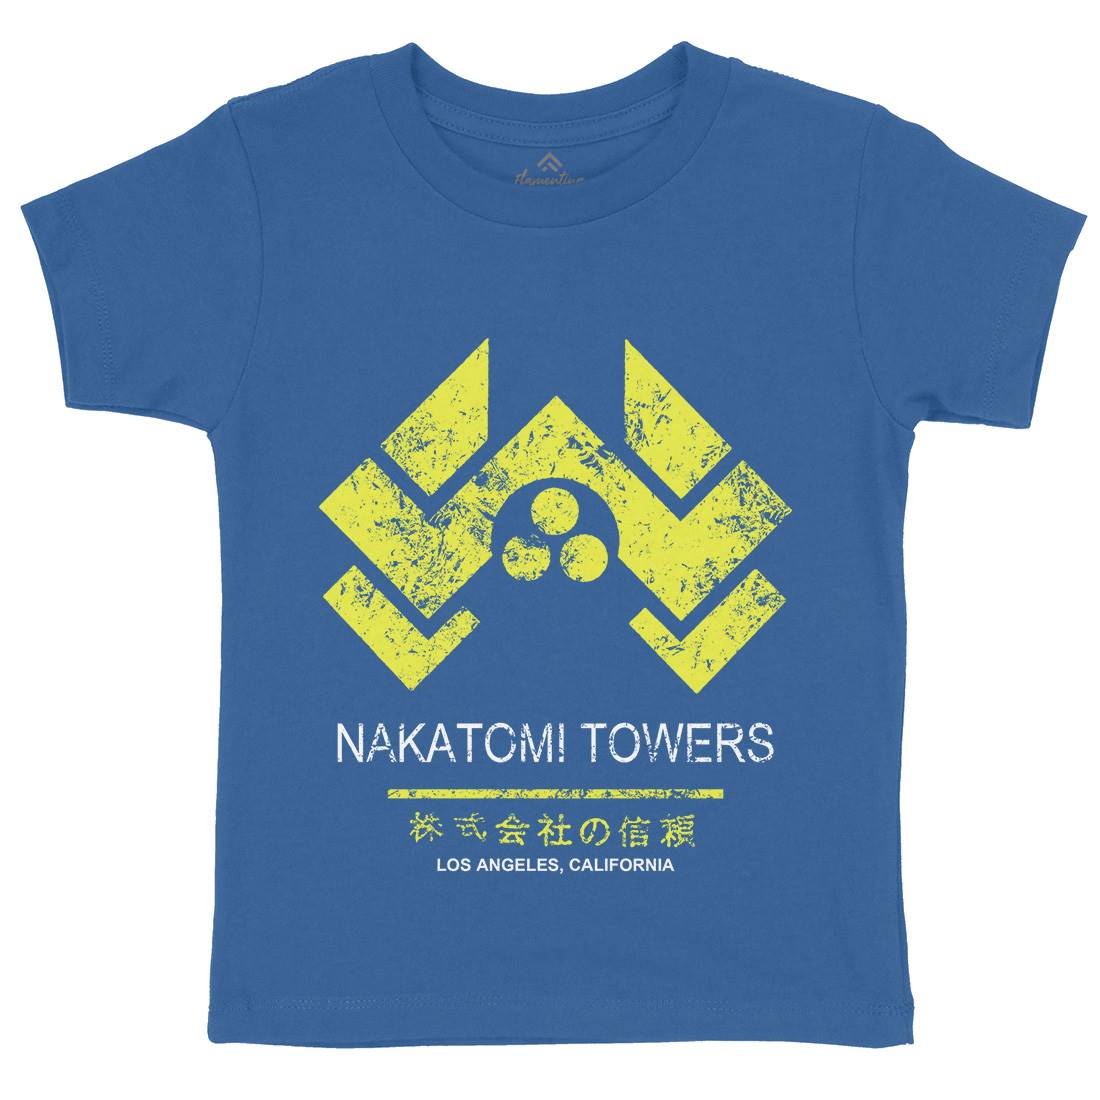 Nakatomi Tower Kids Crew Neck T-Shirt Retro D430